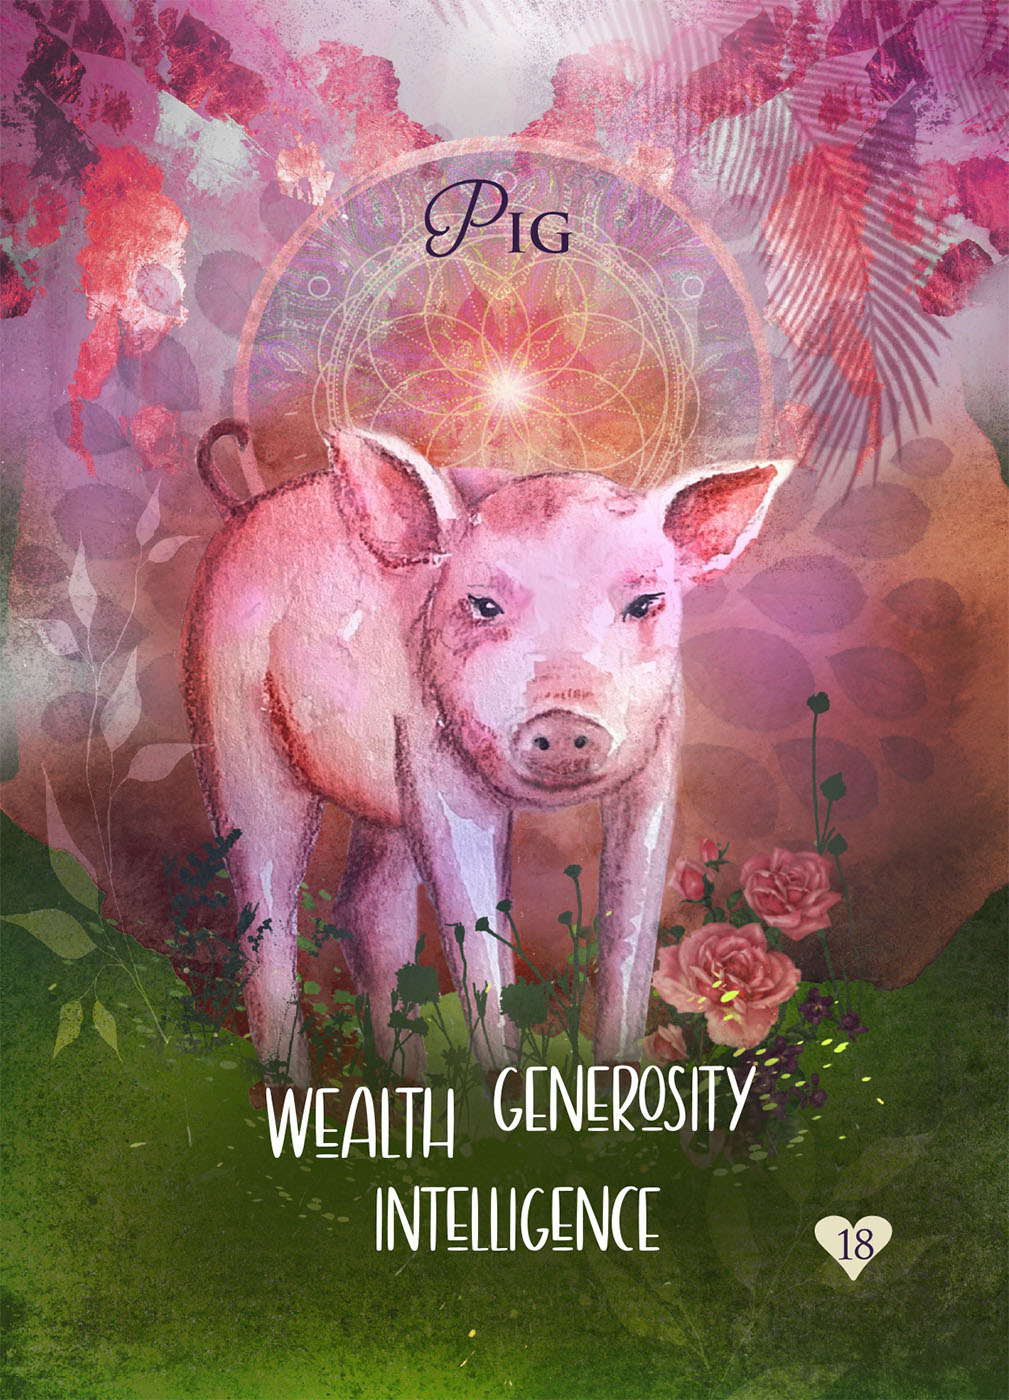 Pig Pigs-in-a-Blanket